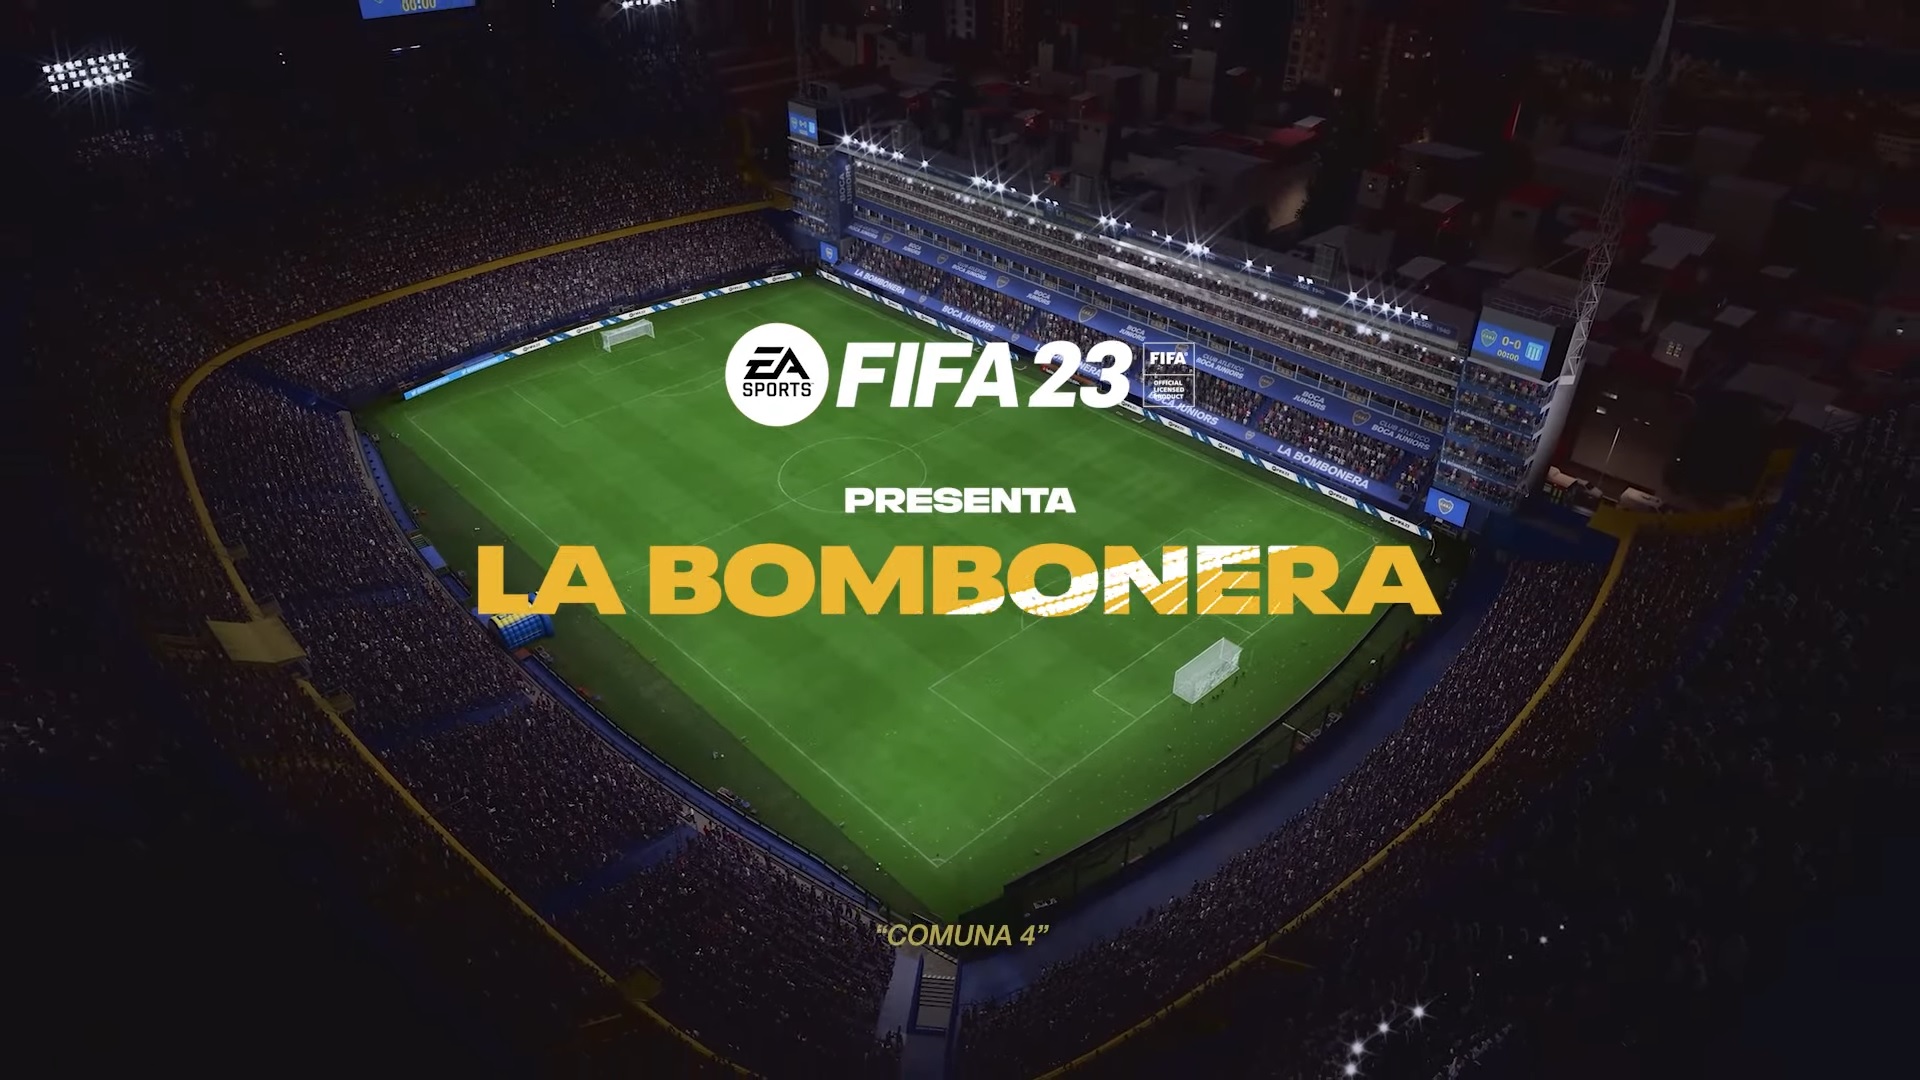 EA SPORTS FIFA 23 anuncia la llegada de La Bombonera